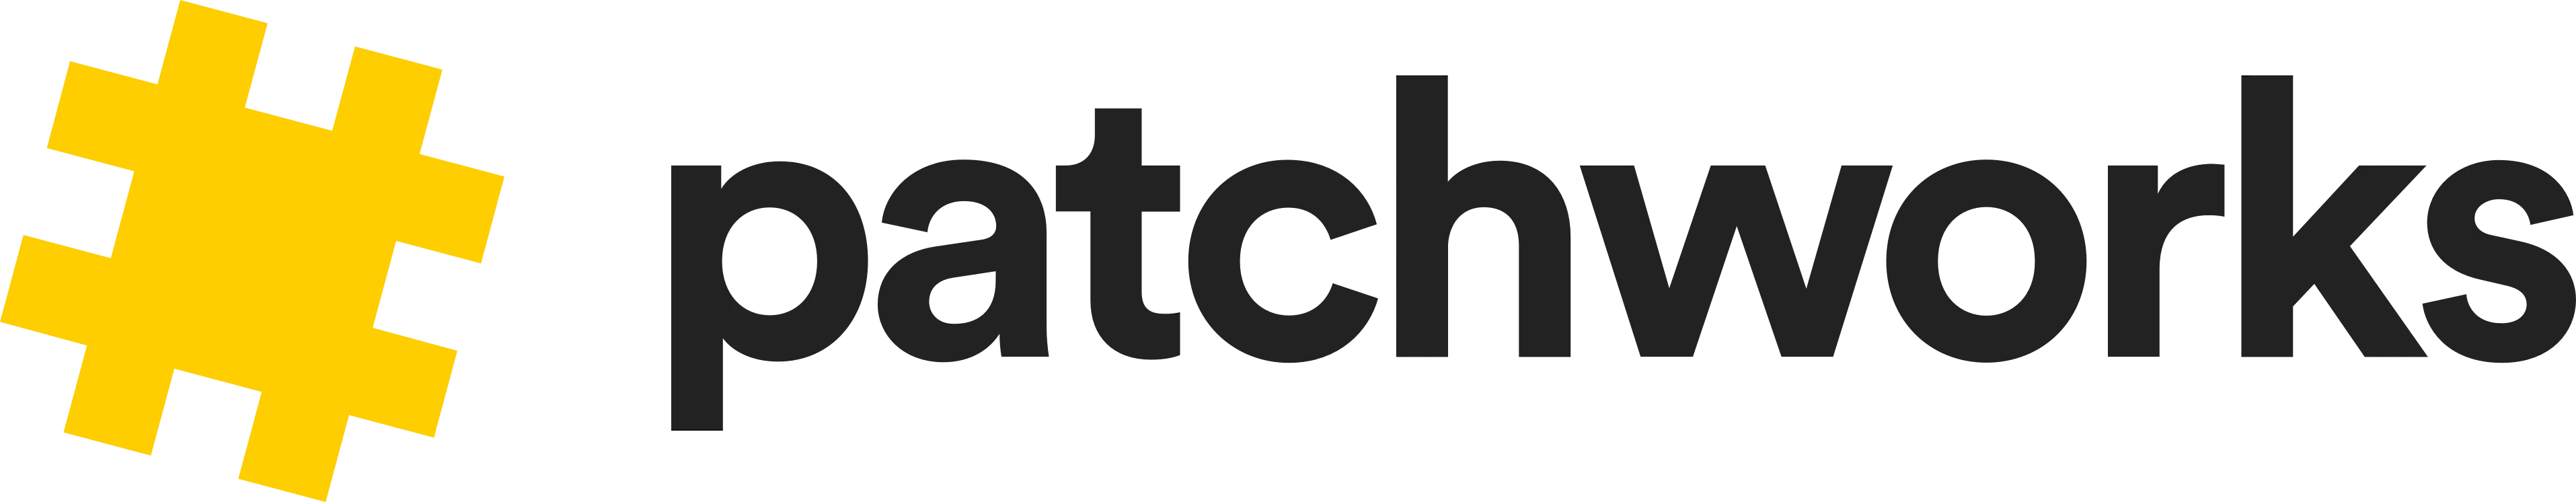 Patchworks logo